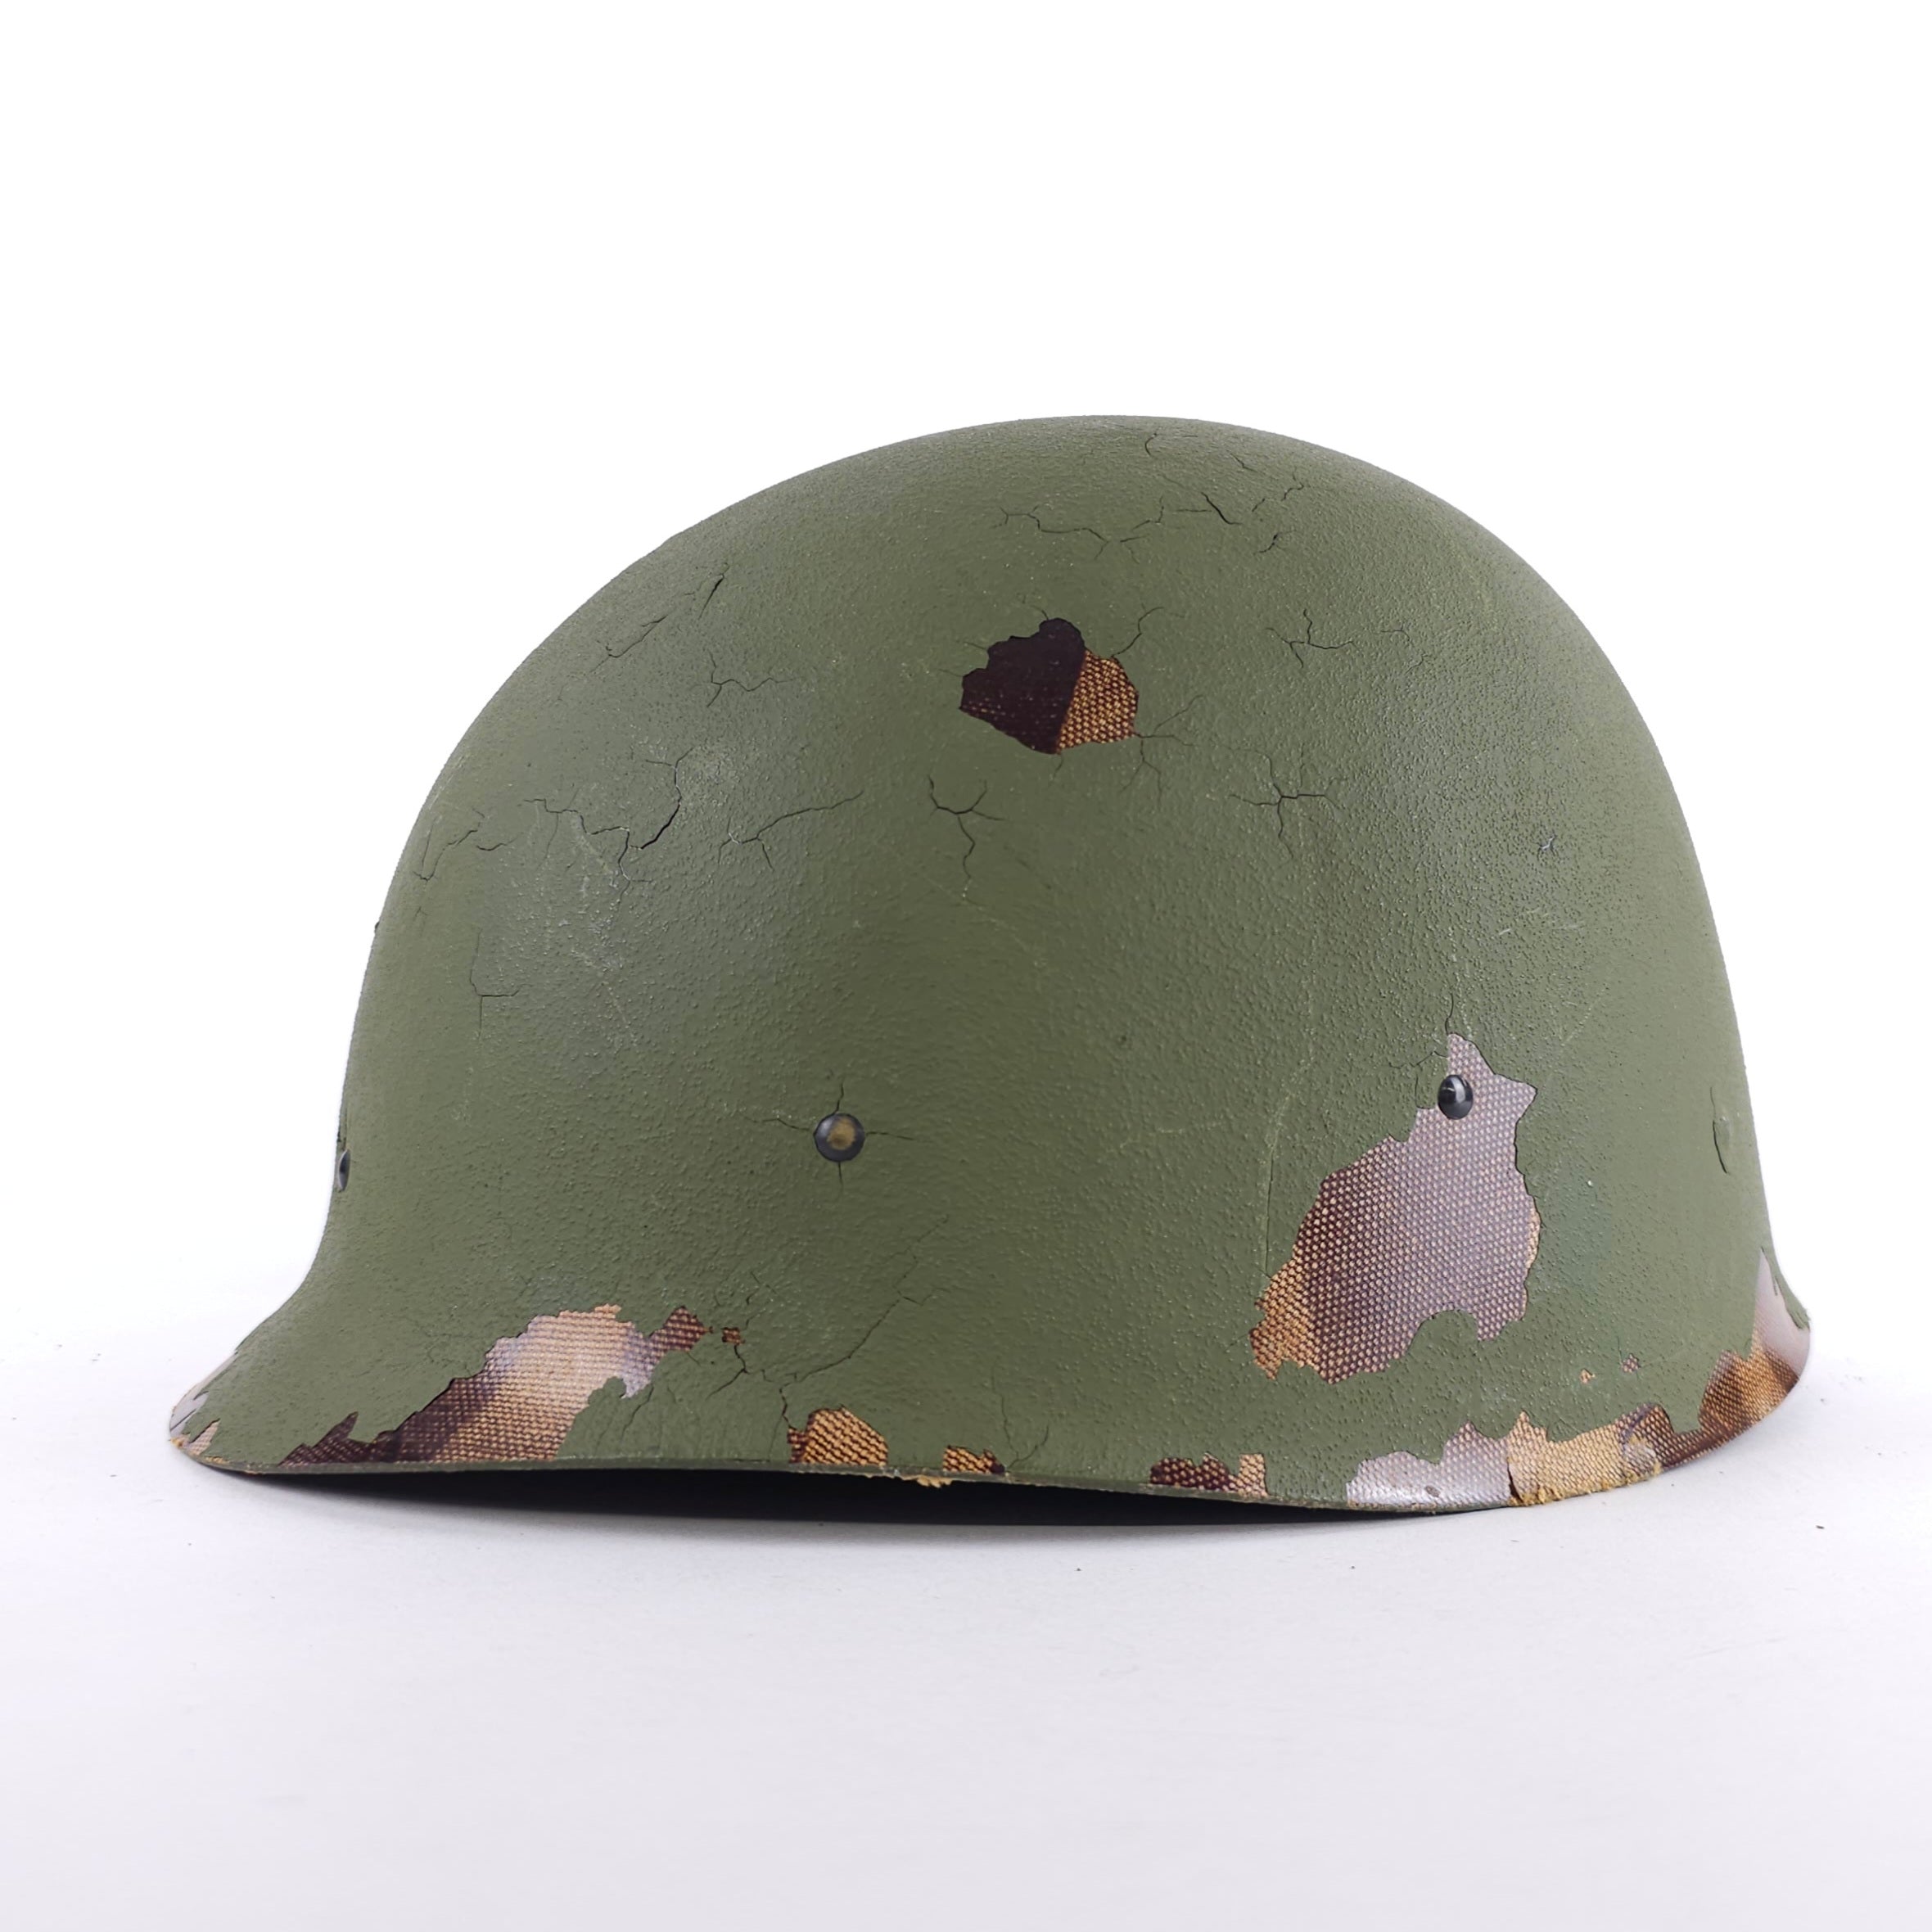 M1 Helmet Liner - 1969 Dated Vietnam War - Original - A